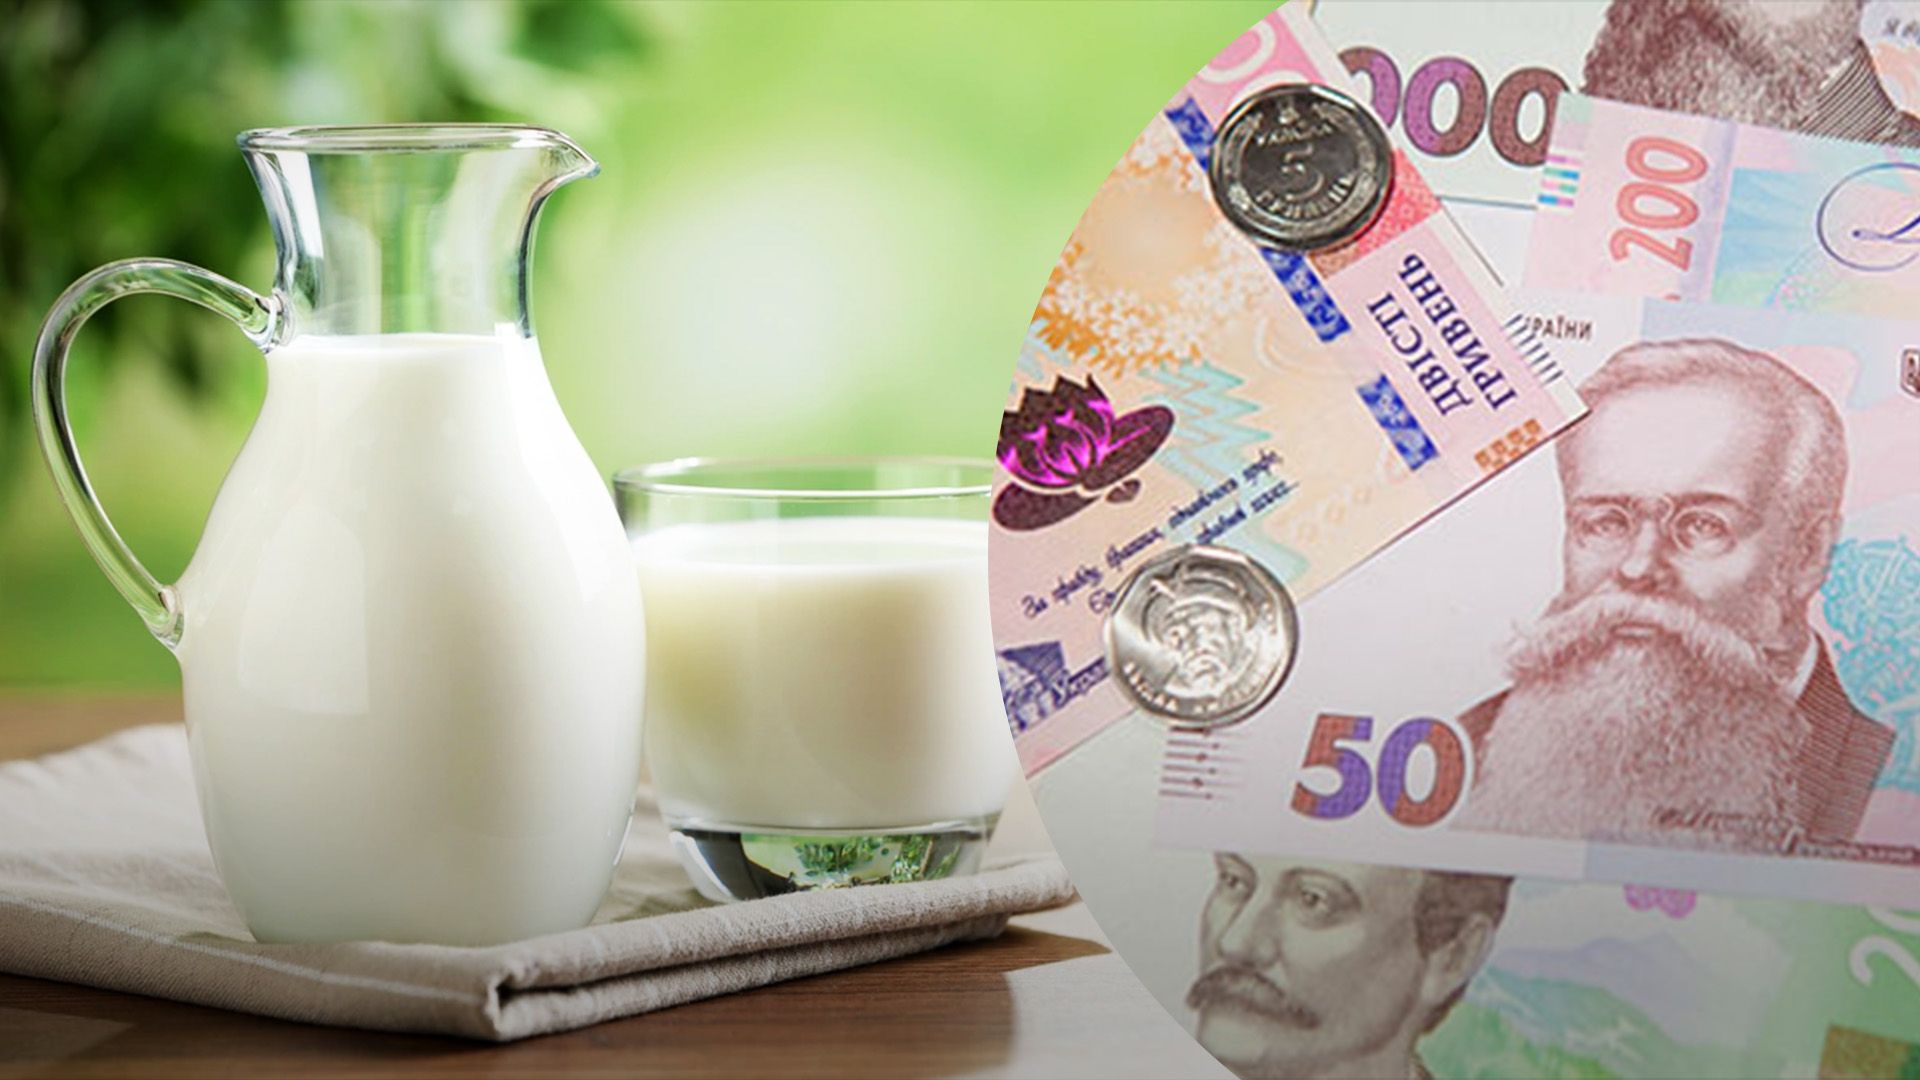 Цены на молочную продукцию выросли